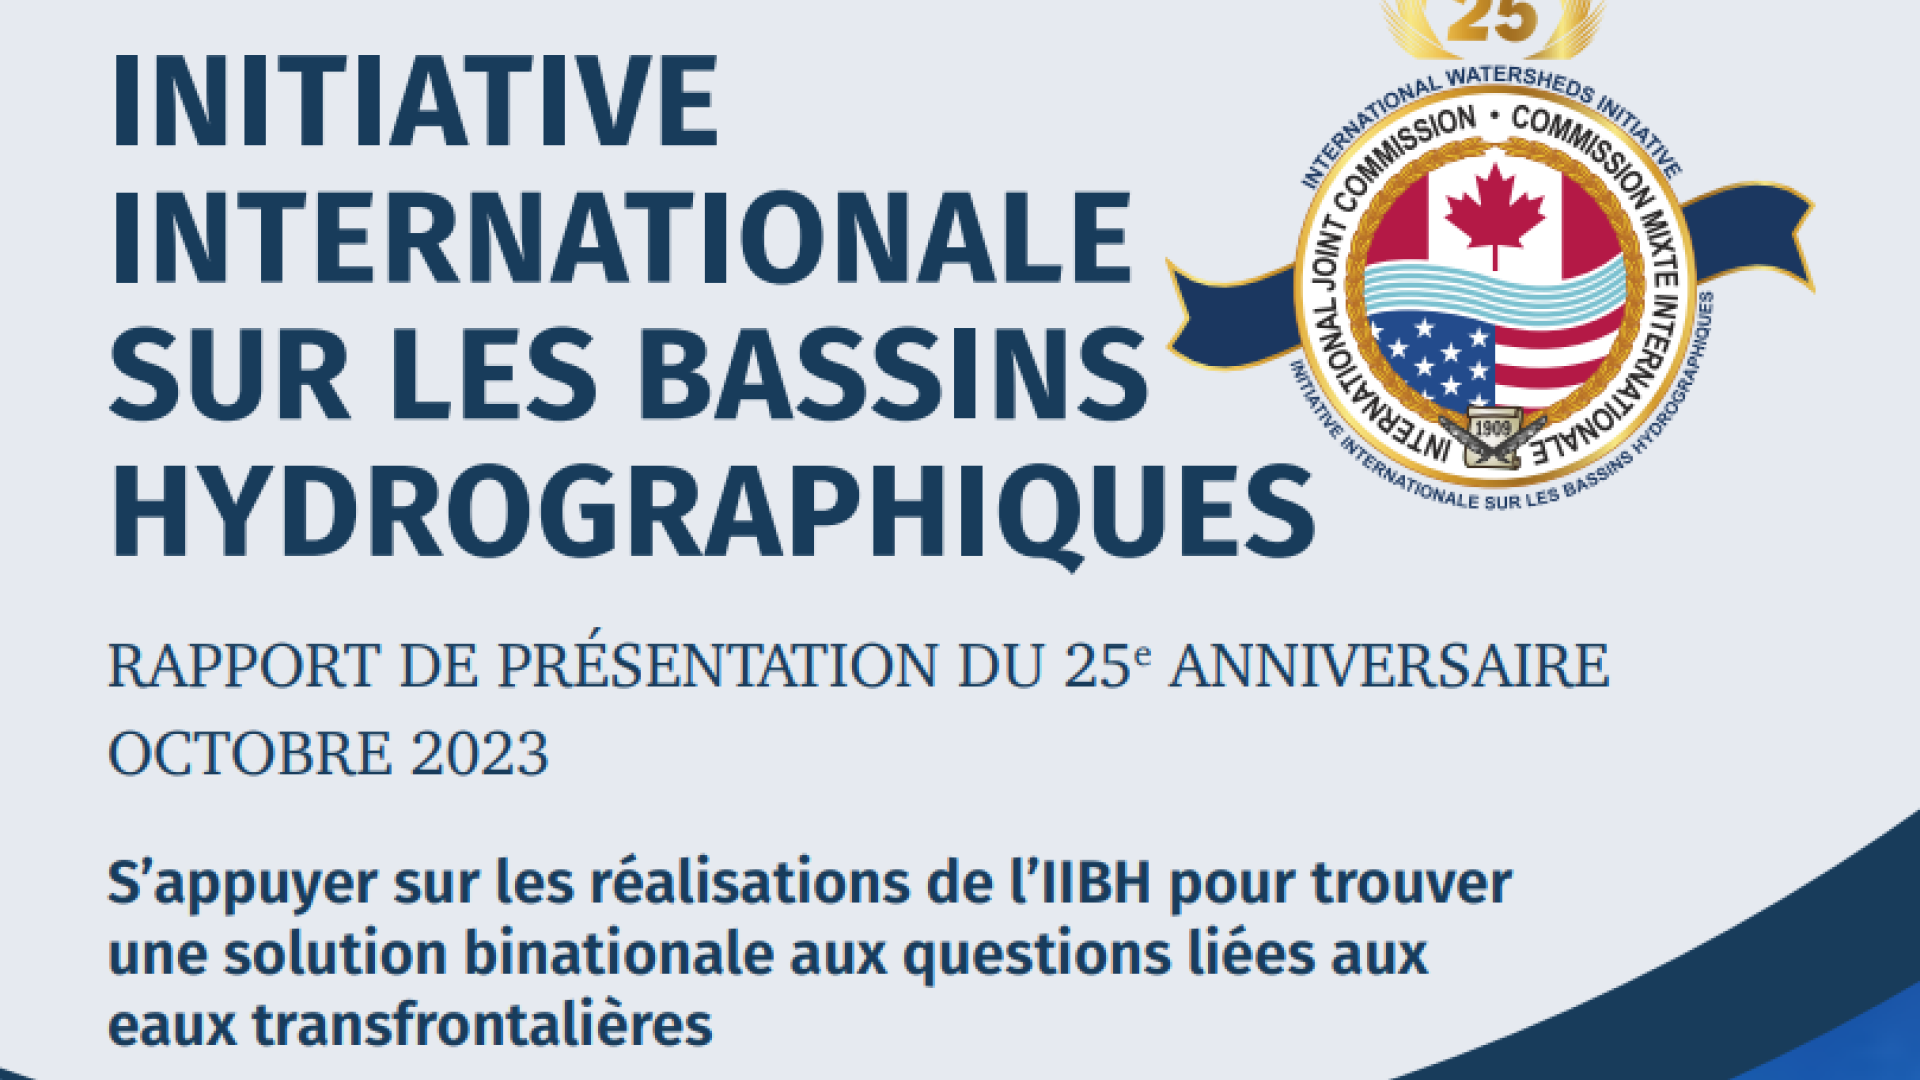 rapport de présentation du 25e anniversaire de l’Initiative internationale des bassins hydrographiques